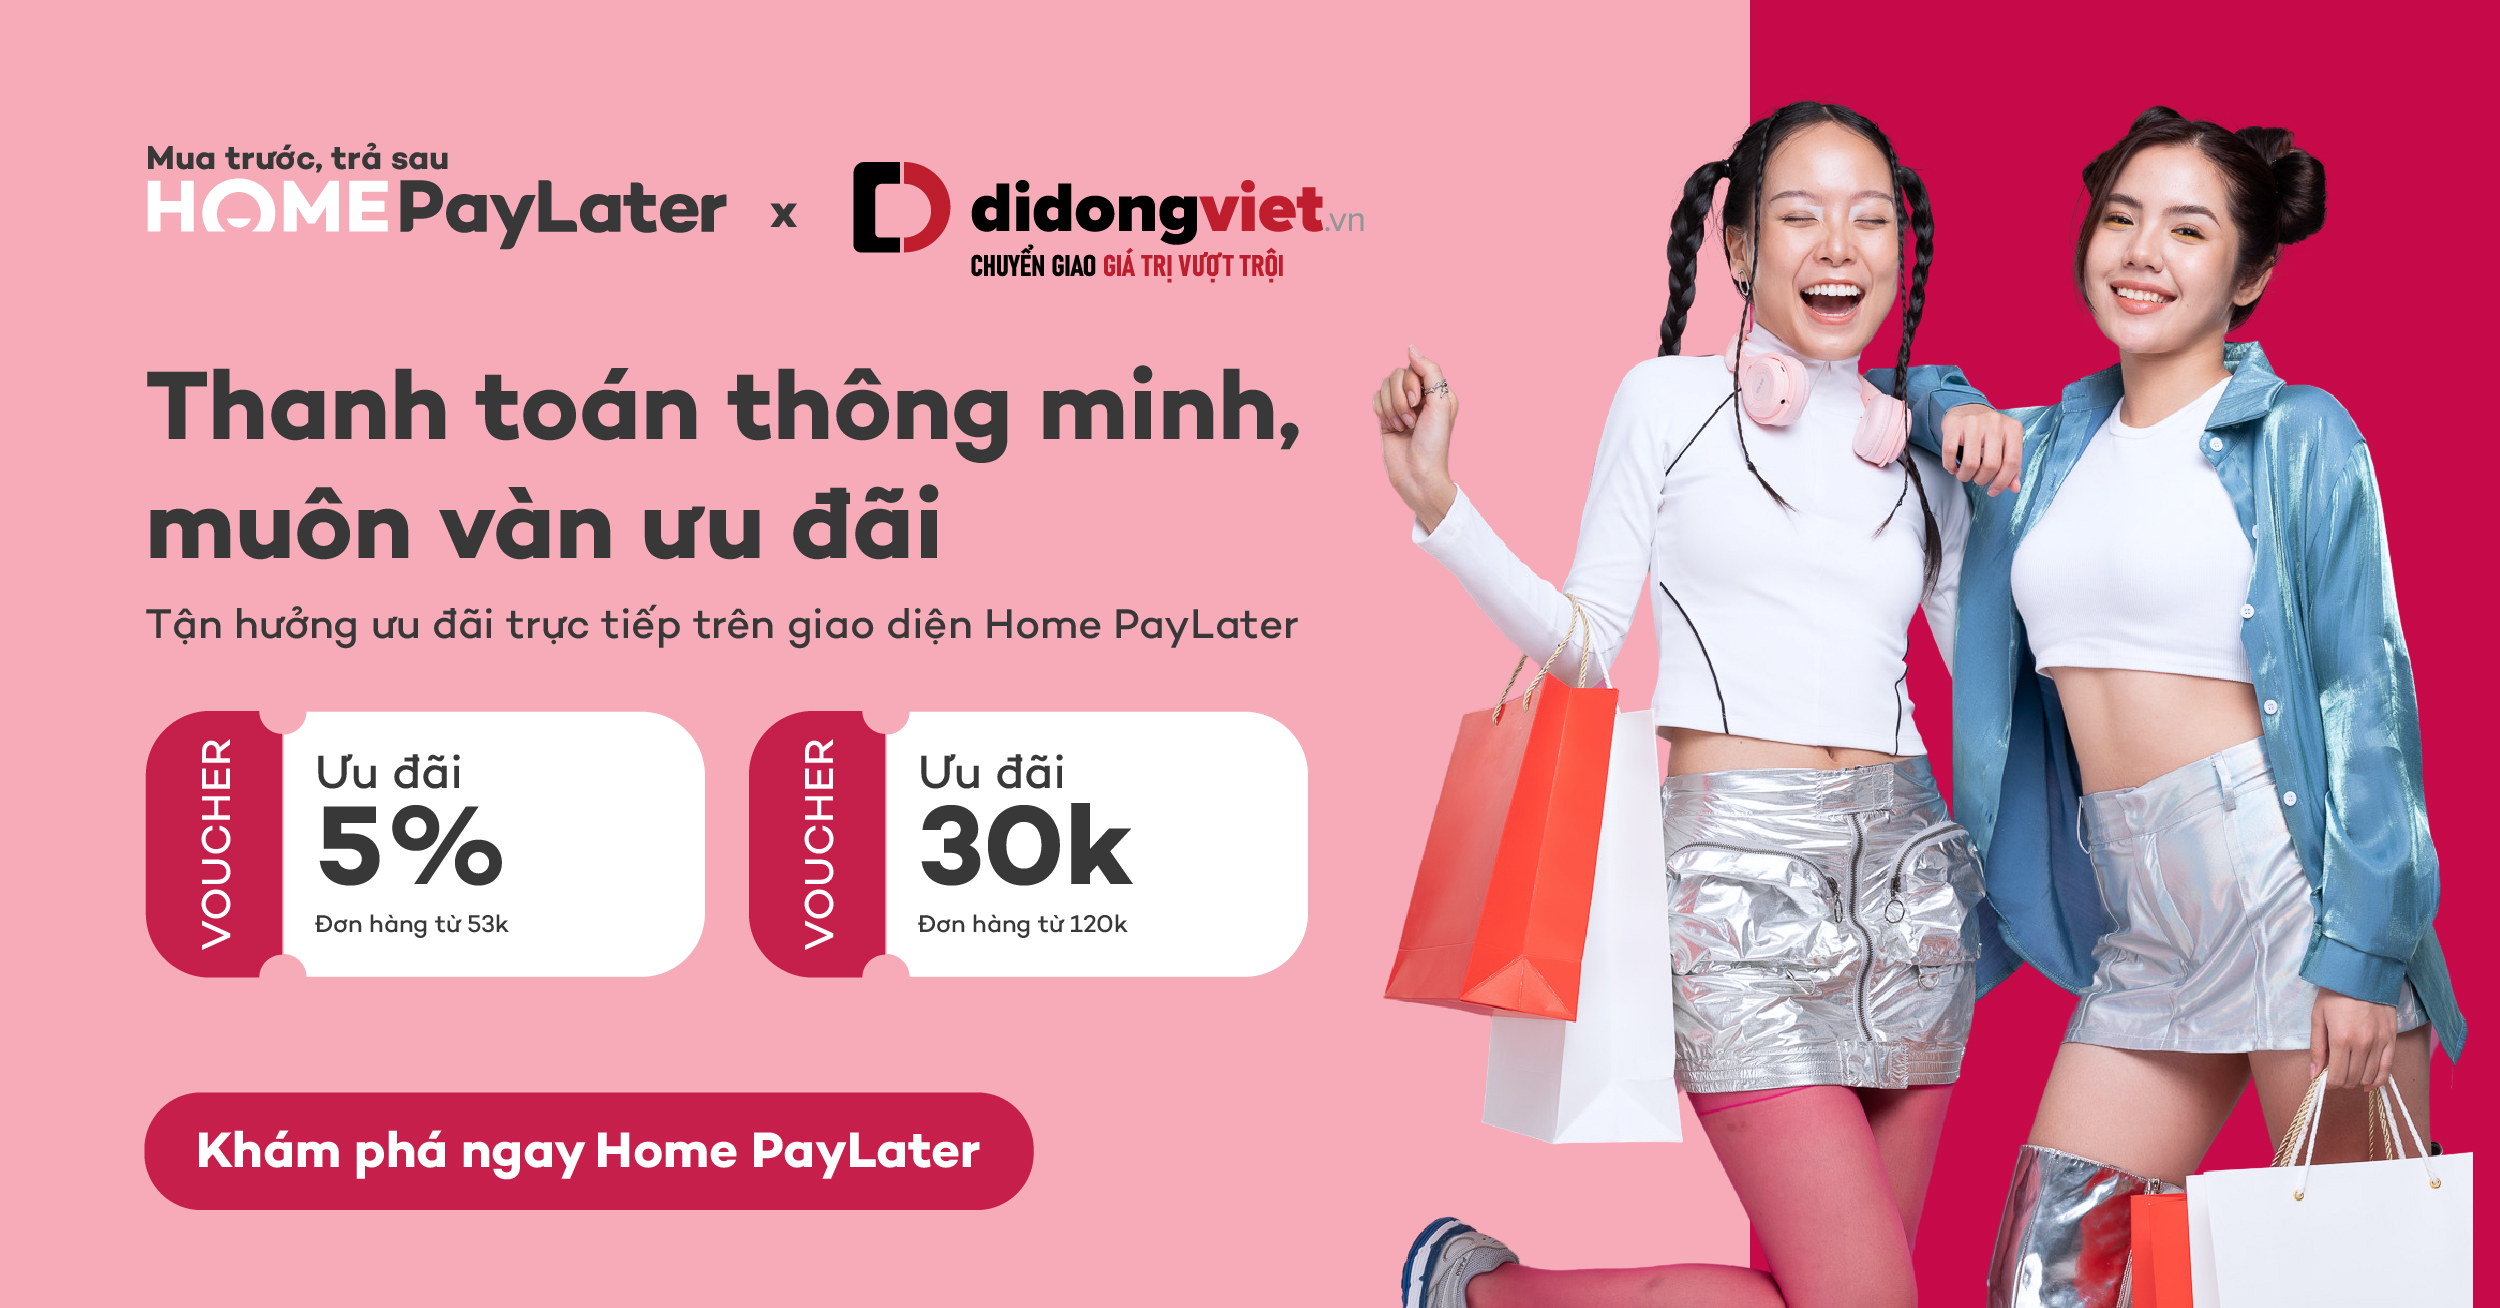 Thanh toán thông minh, muôn vàn ưu đãi tháng 4: Giảm ngay 5% cho tất cả đơn hàng thanh toán qua Home Paylater tại Di Động Việt